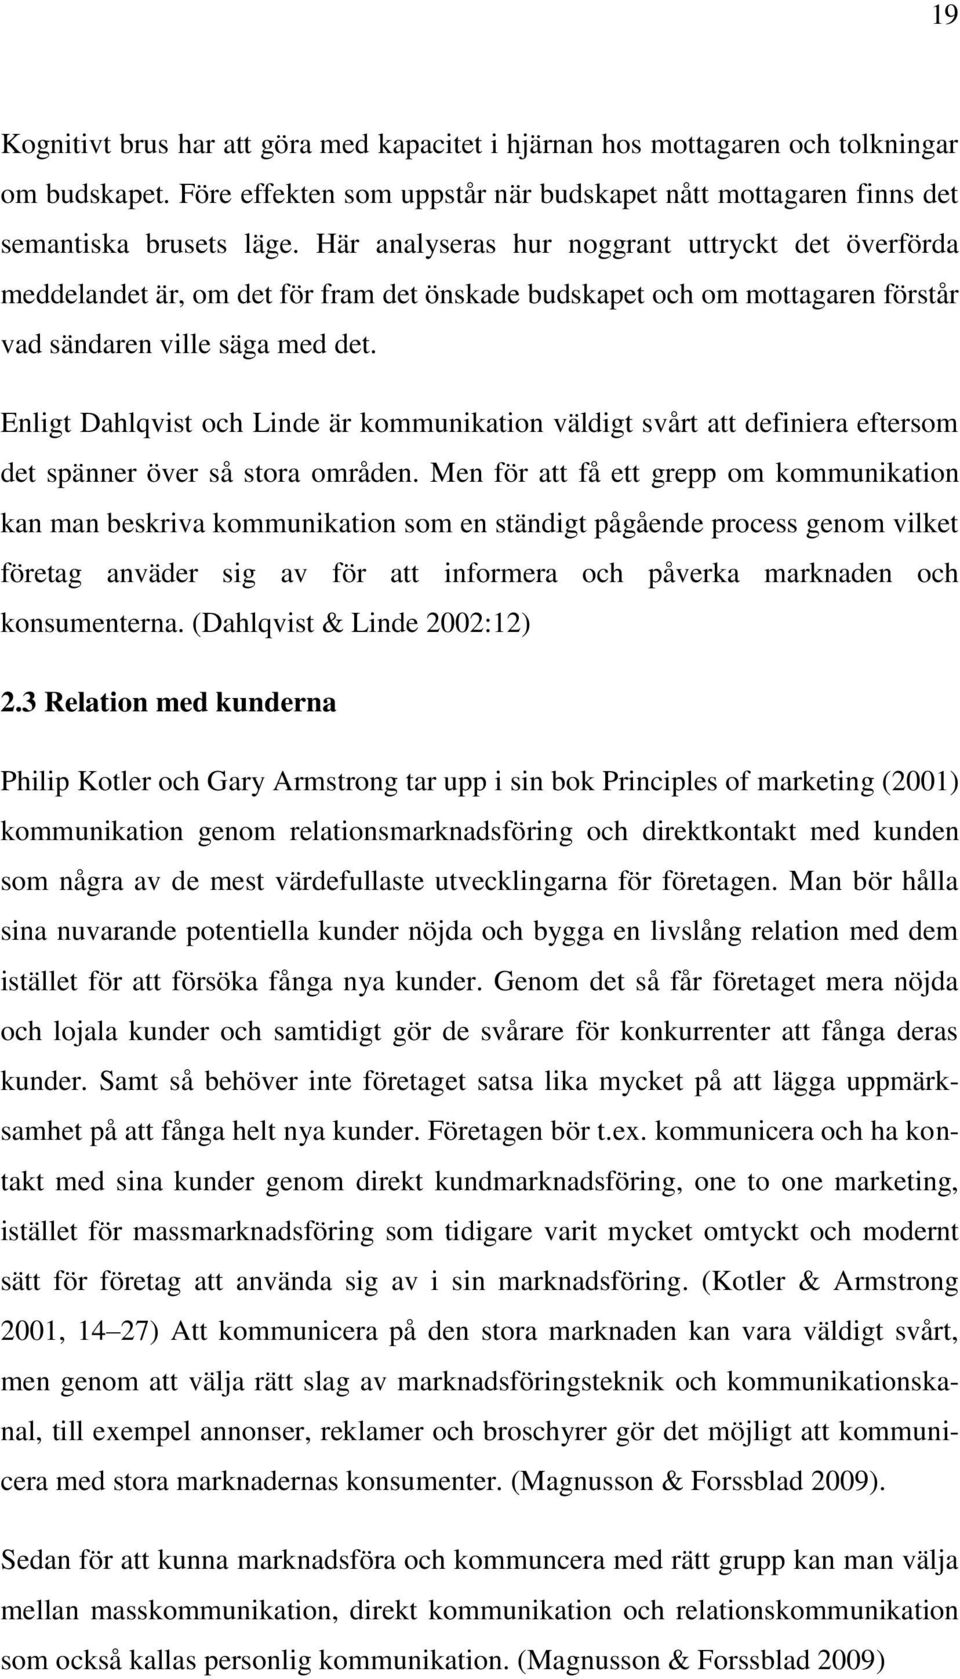 Enligt Dahlqvist och Linde är kommunikation väldigt svårt att definiera eftersom det spänner över så stora områden.